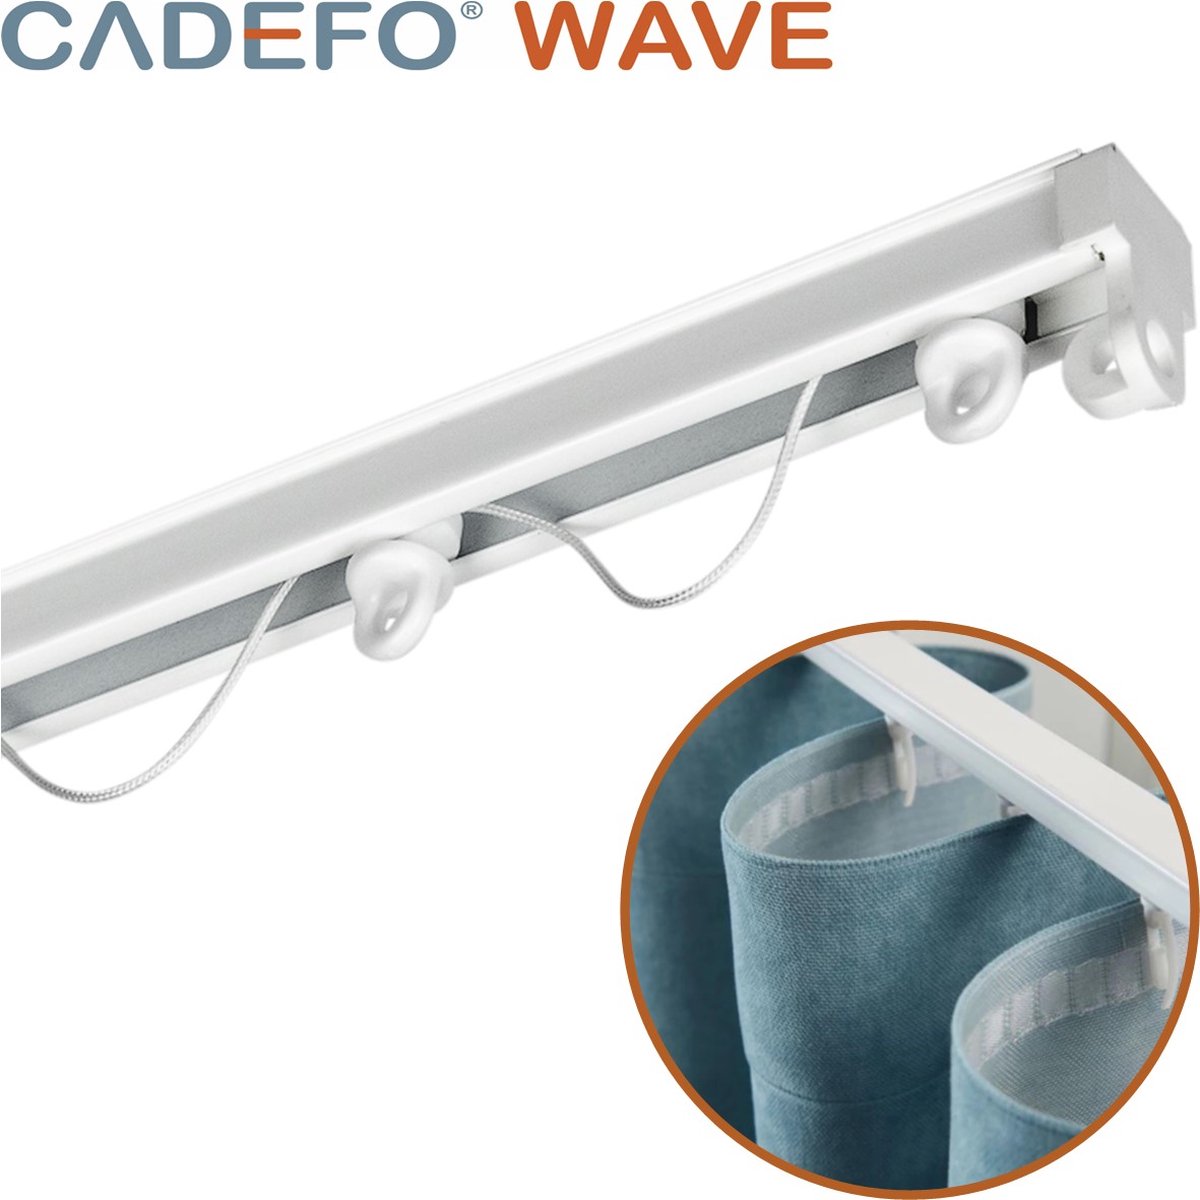 CADEFO WAVE (401 - 450 cm) Gordijnrails - Compleet op maat! - UIT 1 STUK - Leverbaar tot 6 meter - Plafondbevestiging - Lengte 419 cm